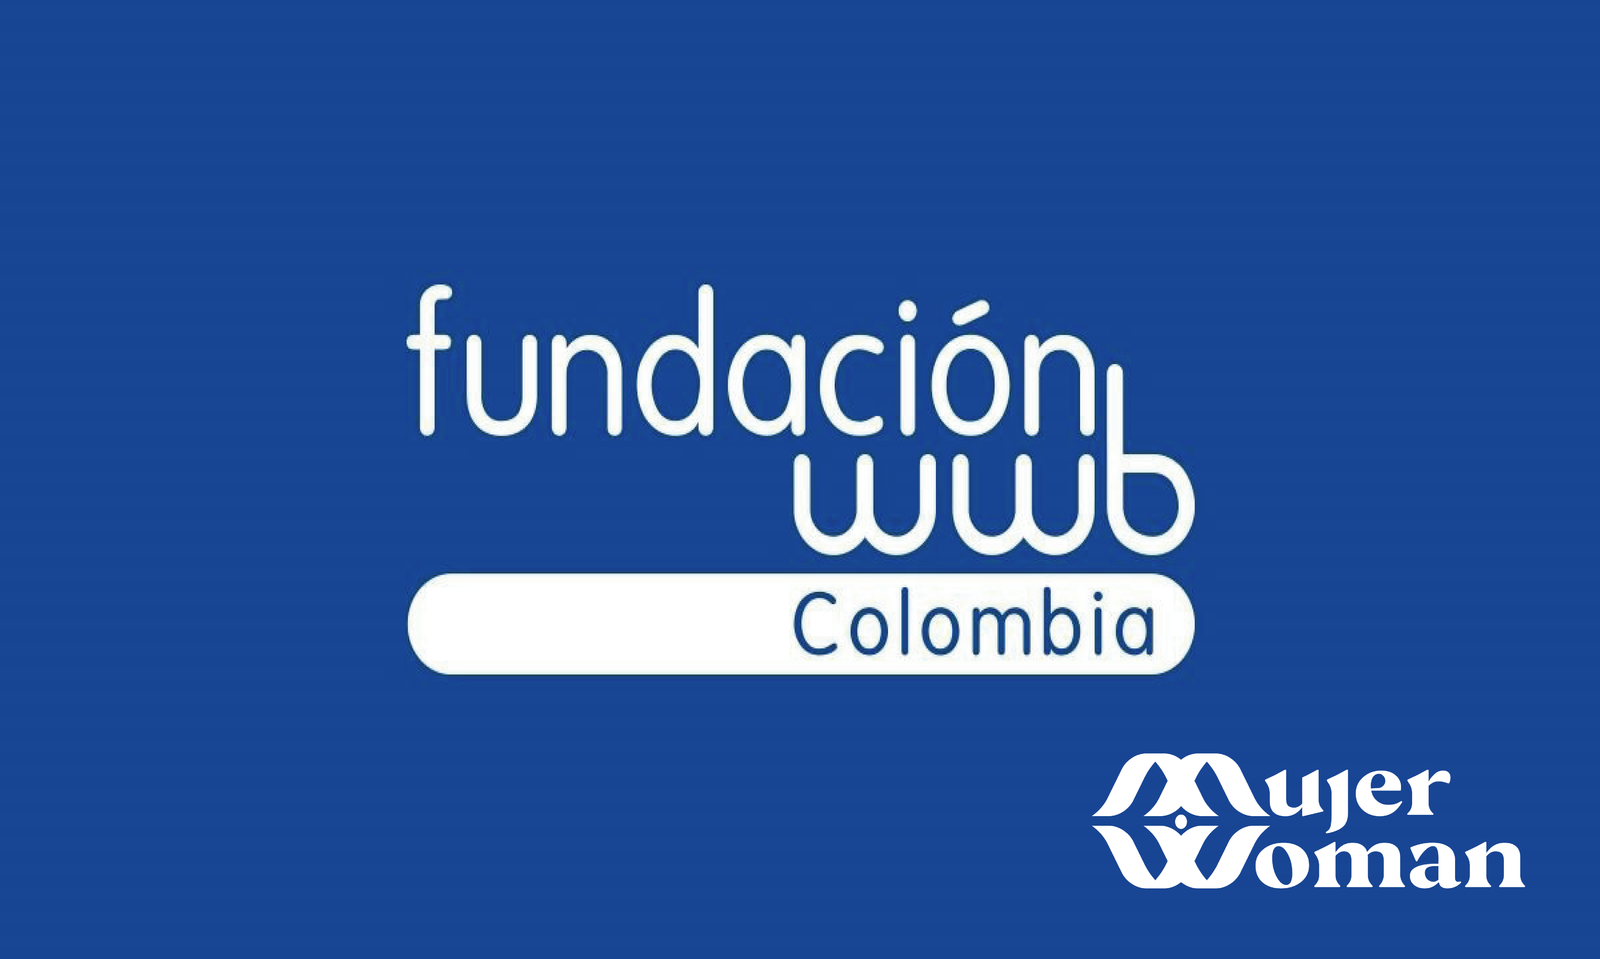 fundacion-wwb-colombia-america-latina-desarrollo-recursos-capacitaciones-desigualdad-genero-estructura-segundas-oportunidades-necesidades-red-women-creditos-cooperaciones-internacional-multilateral